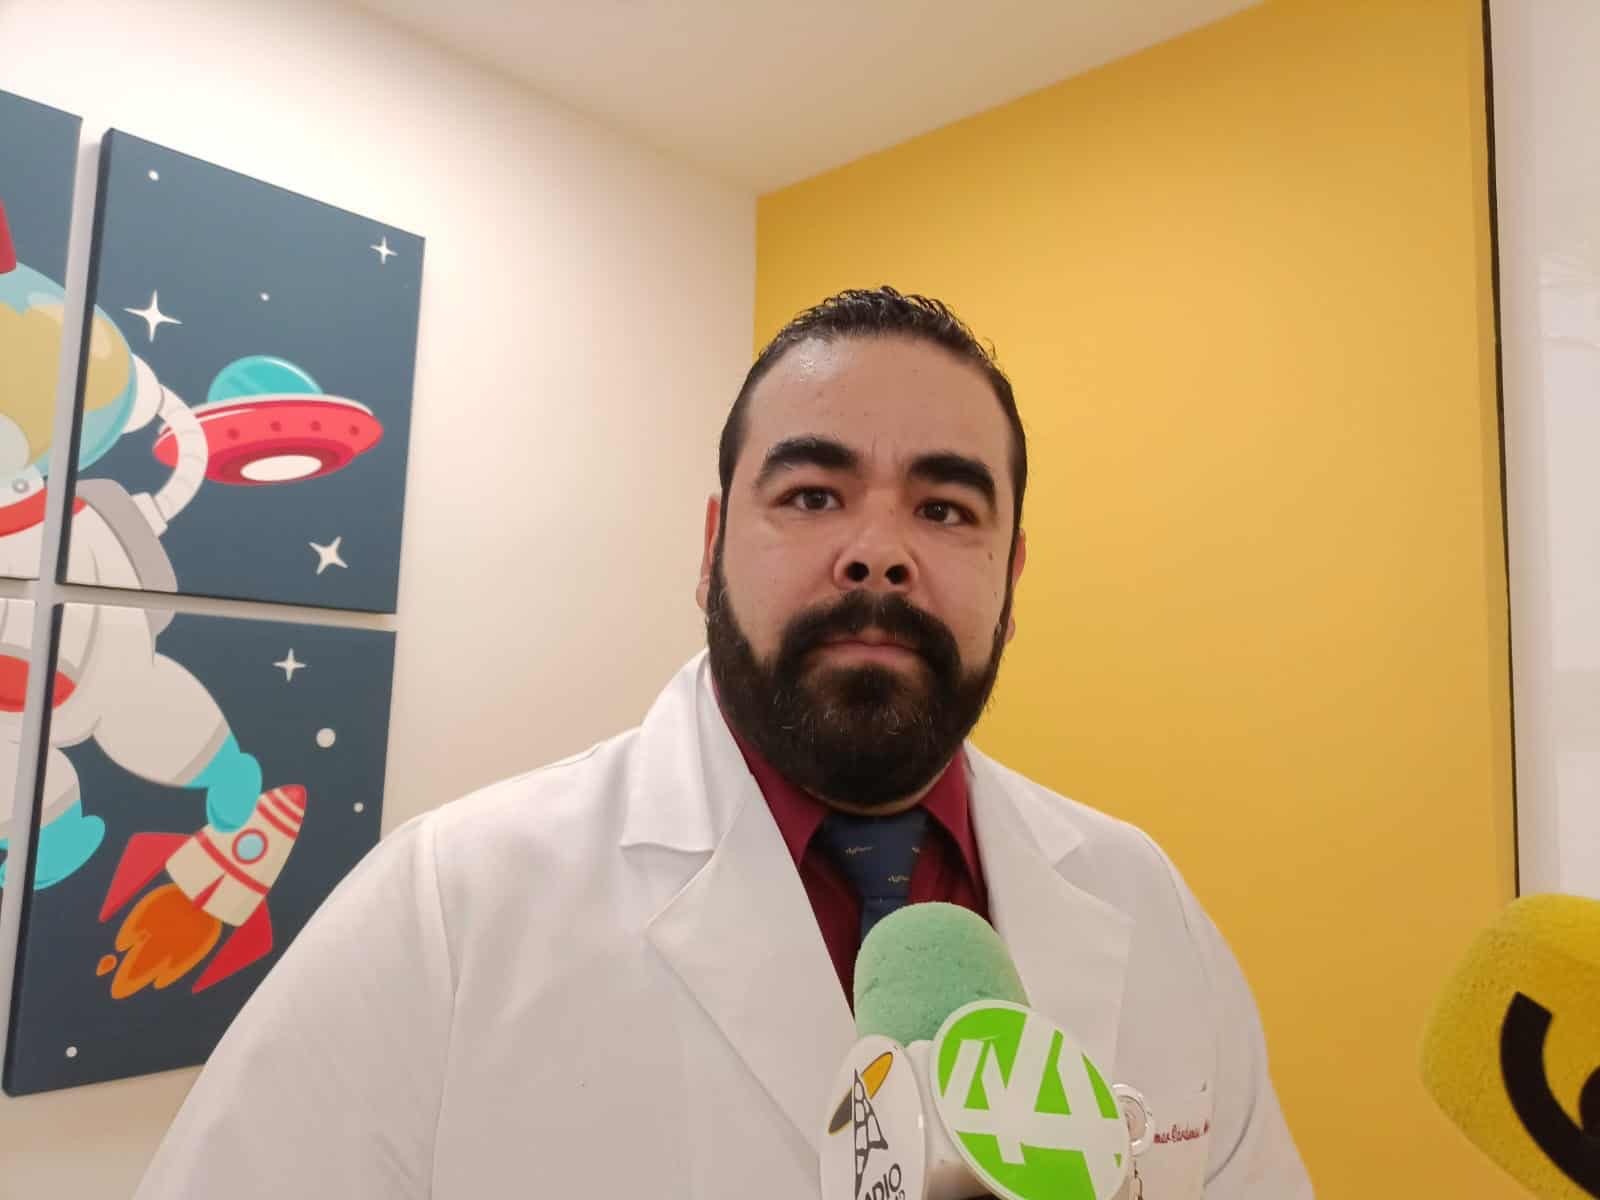 Shriners Childrens abre puertas en Guadalajara para atender a niños con afectaciones ortopédicas